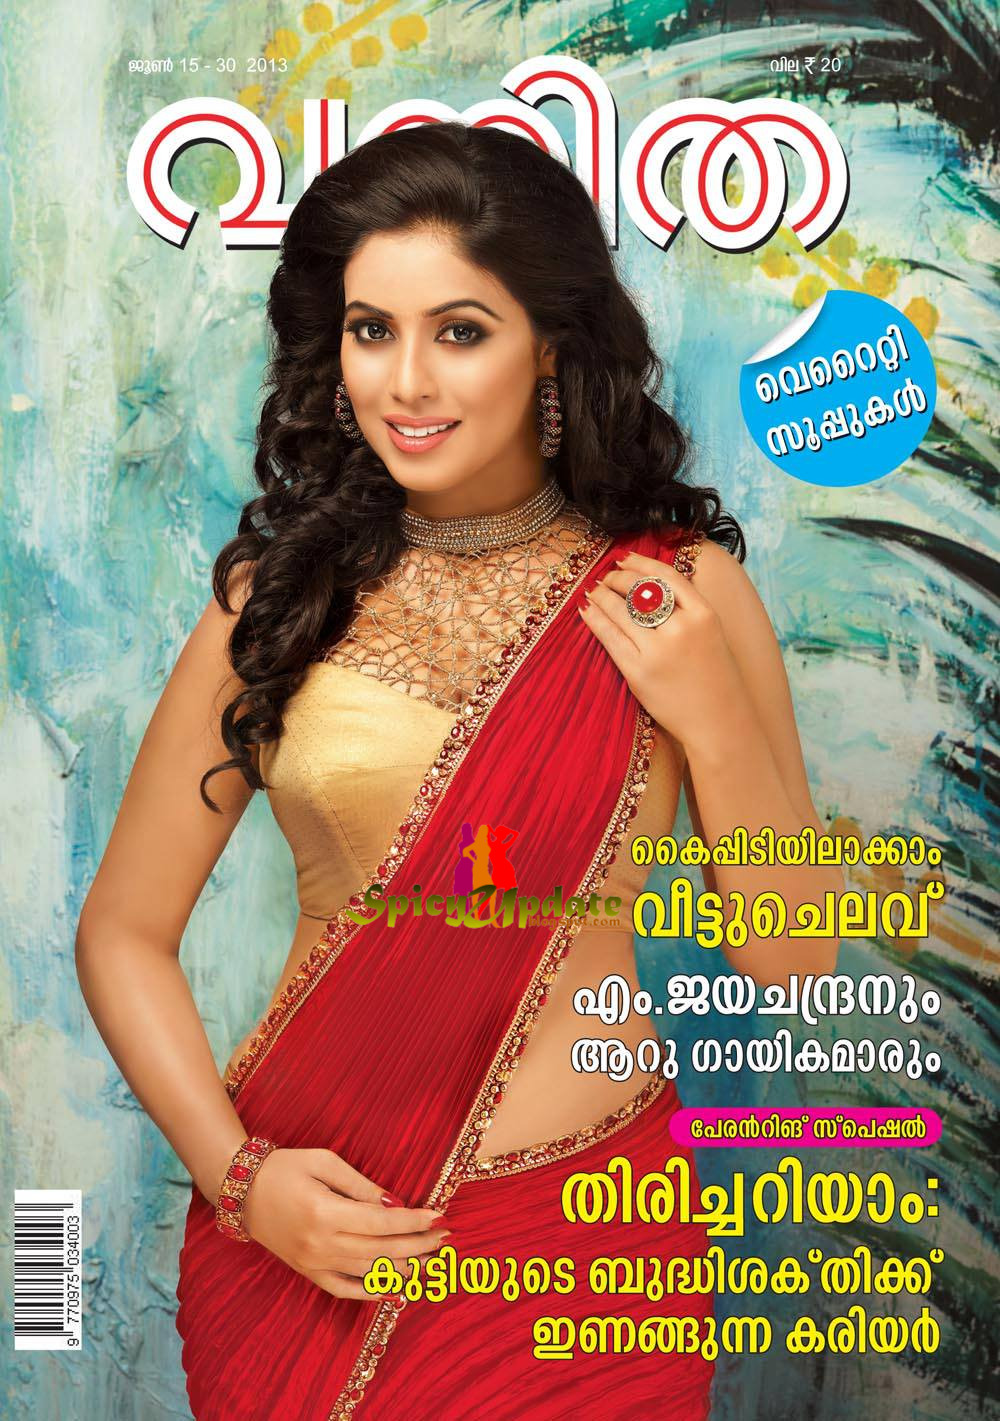 Spicy Update Shamna Kasim Aka Poorna Latest Spicy Hot Scans From Vanitha Magazine June 2013 Issue